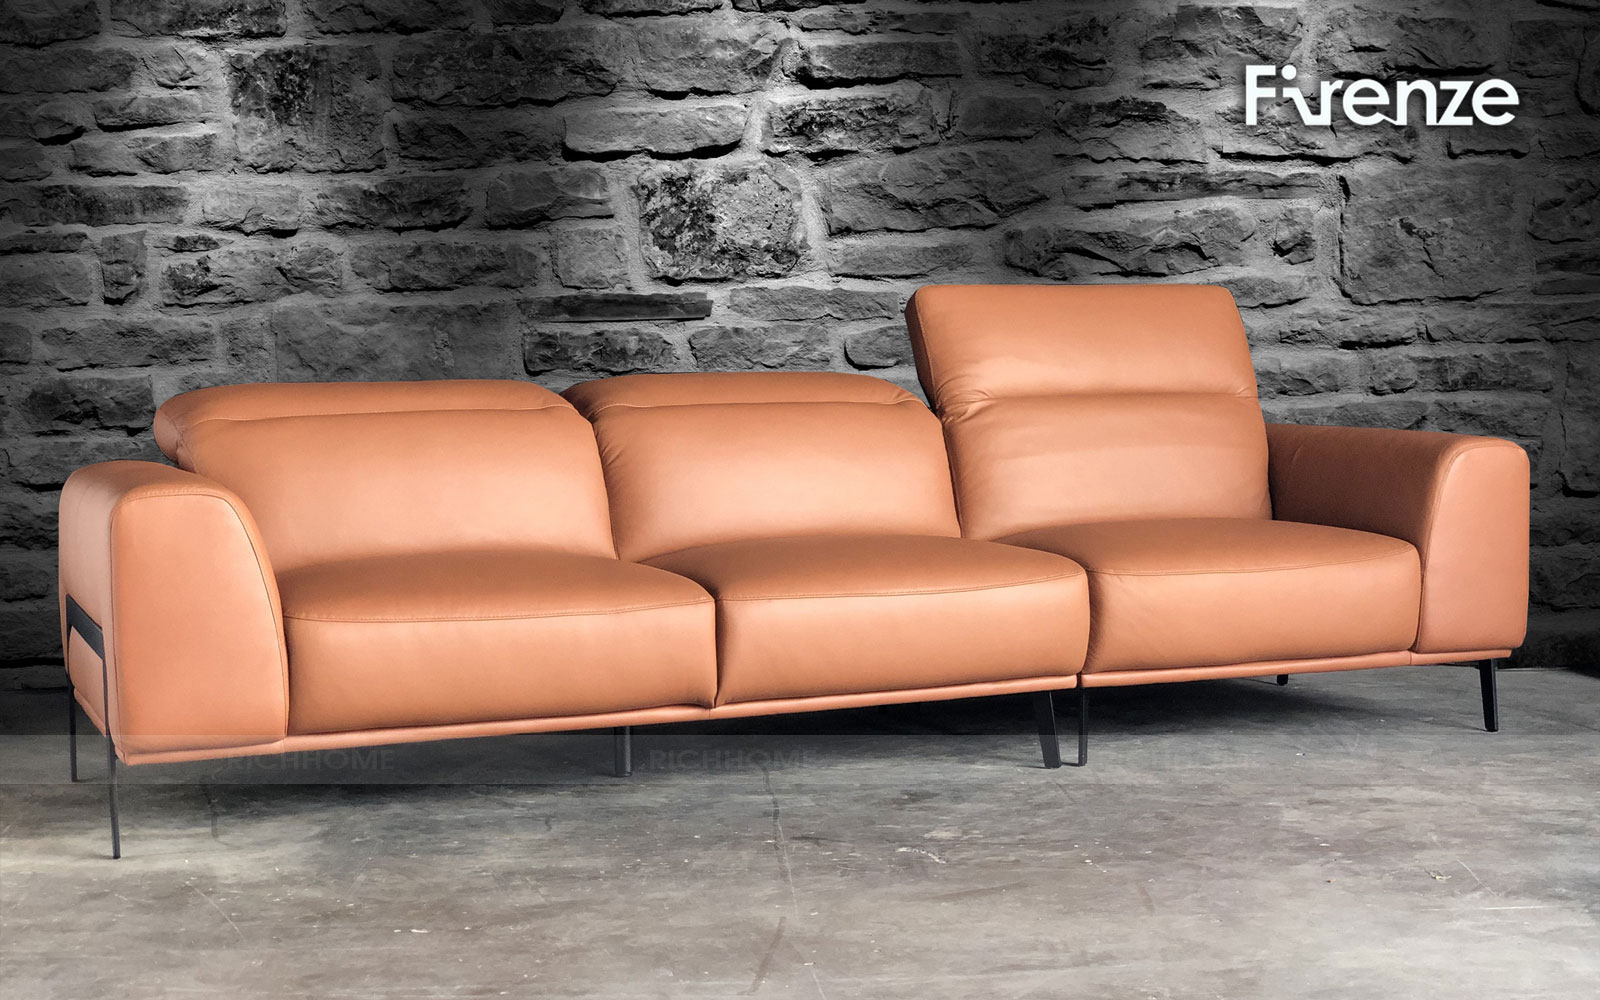 Bật mí cách lựa chọn sofa văng đẹp cho phòng khách hiện đại - Ảnh 2